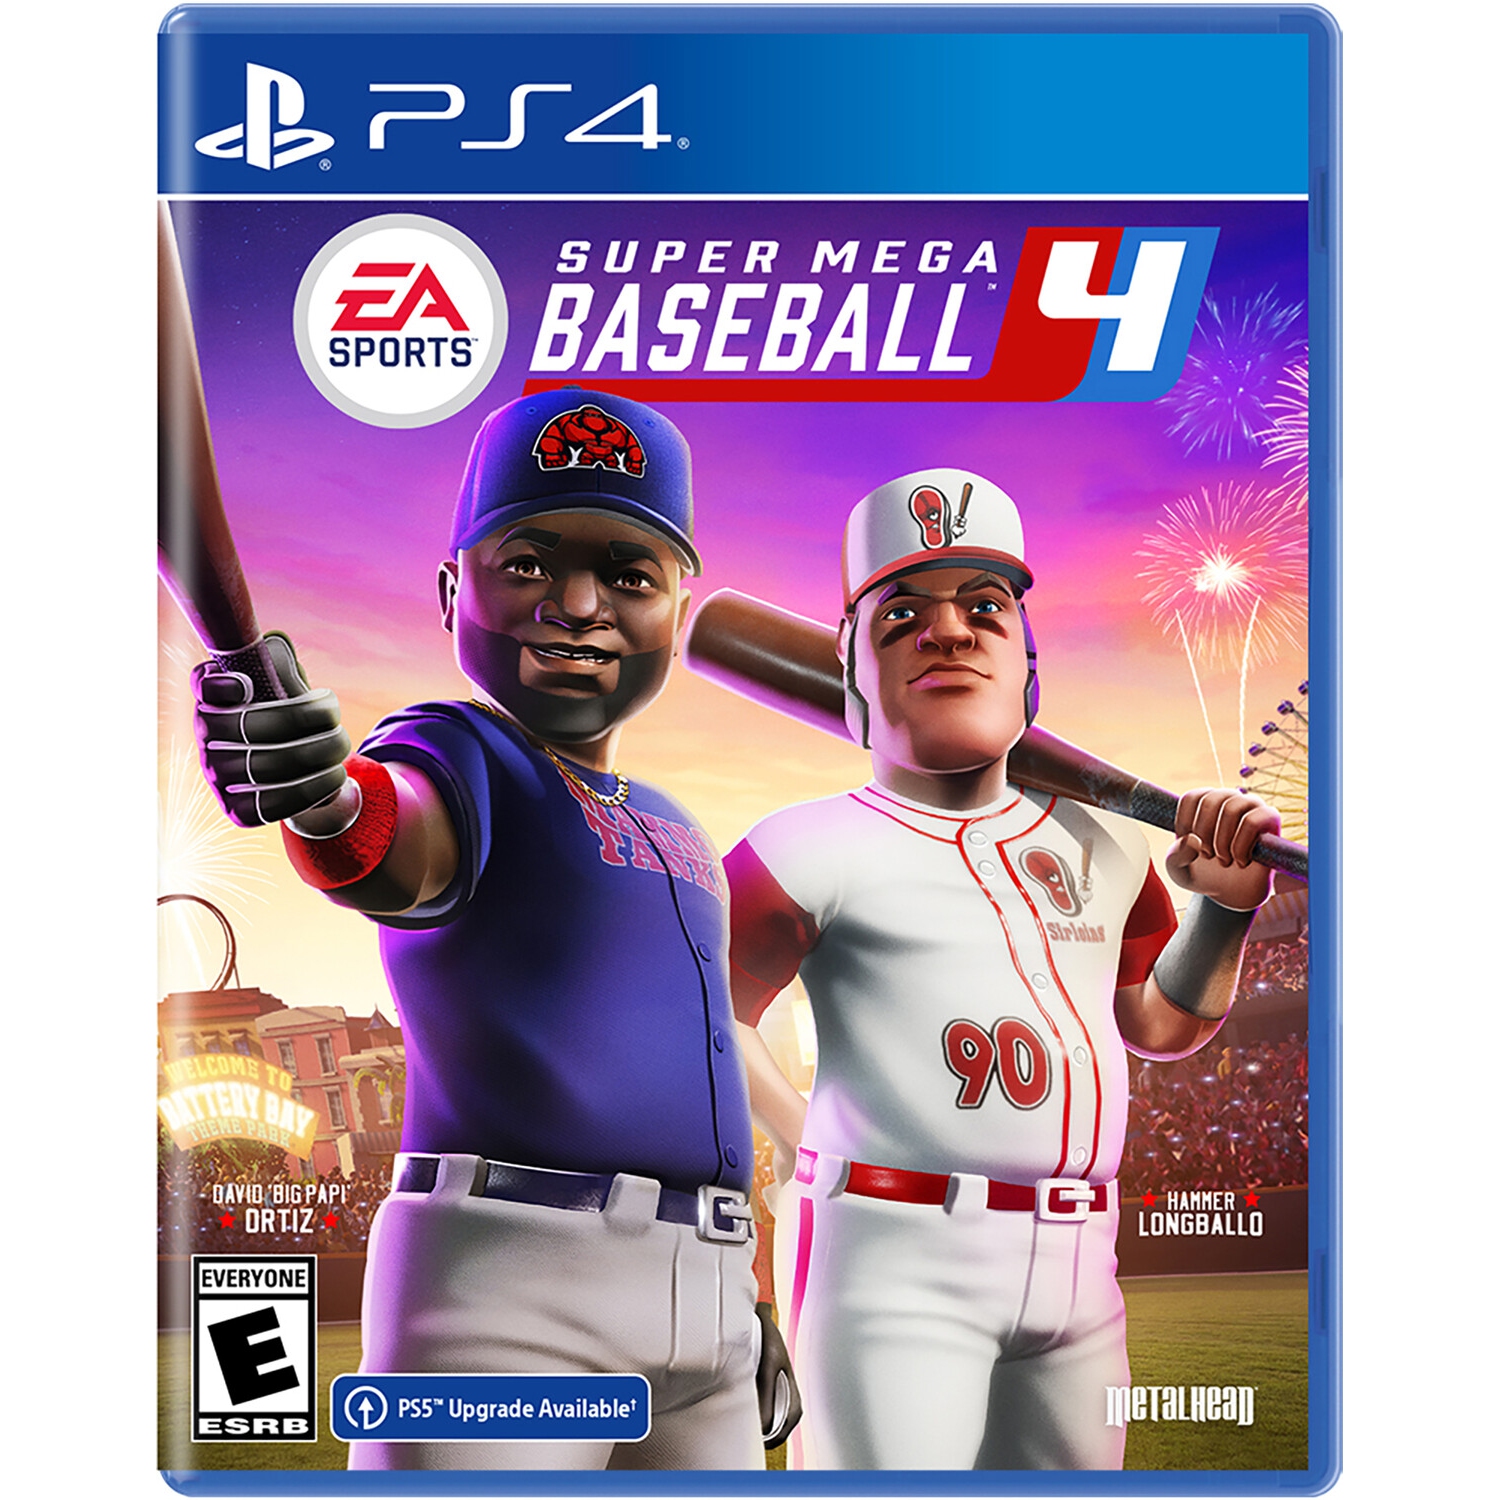 Super Mega Baseball 4 for PlayStation 4 [VIDEOGAMES]